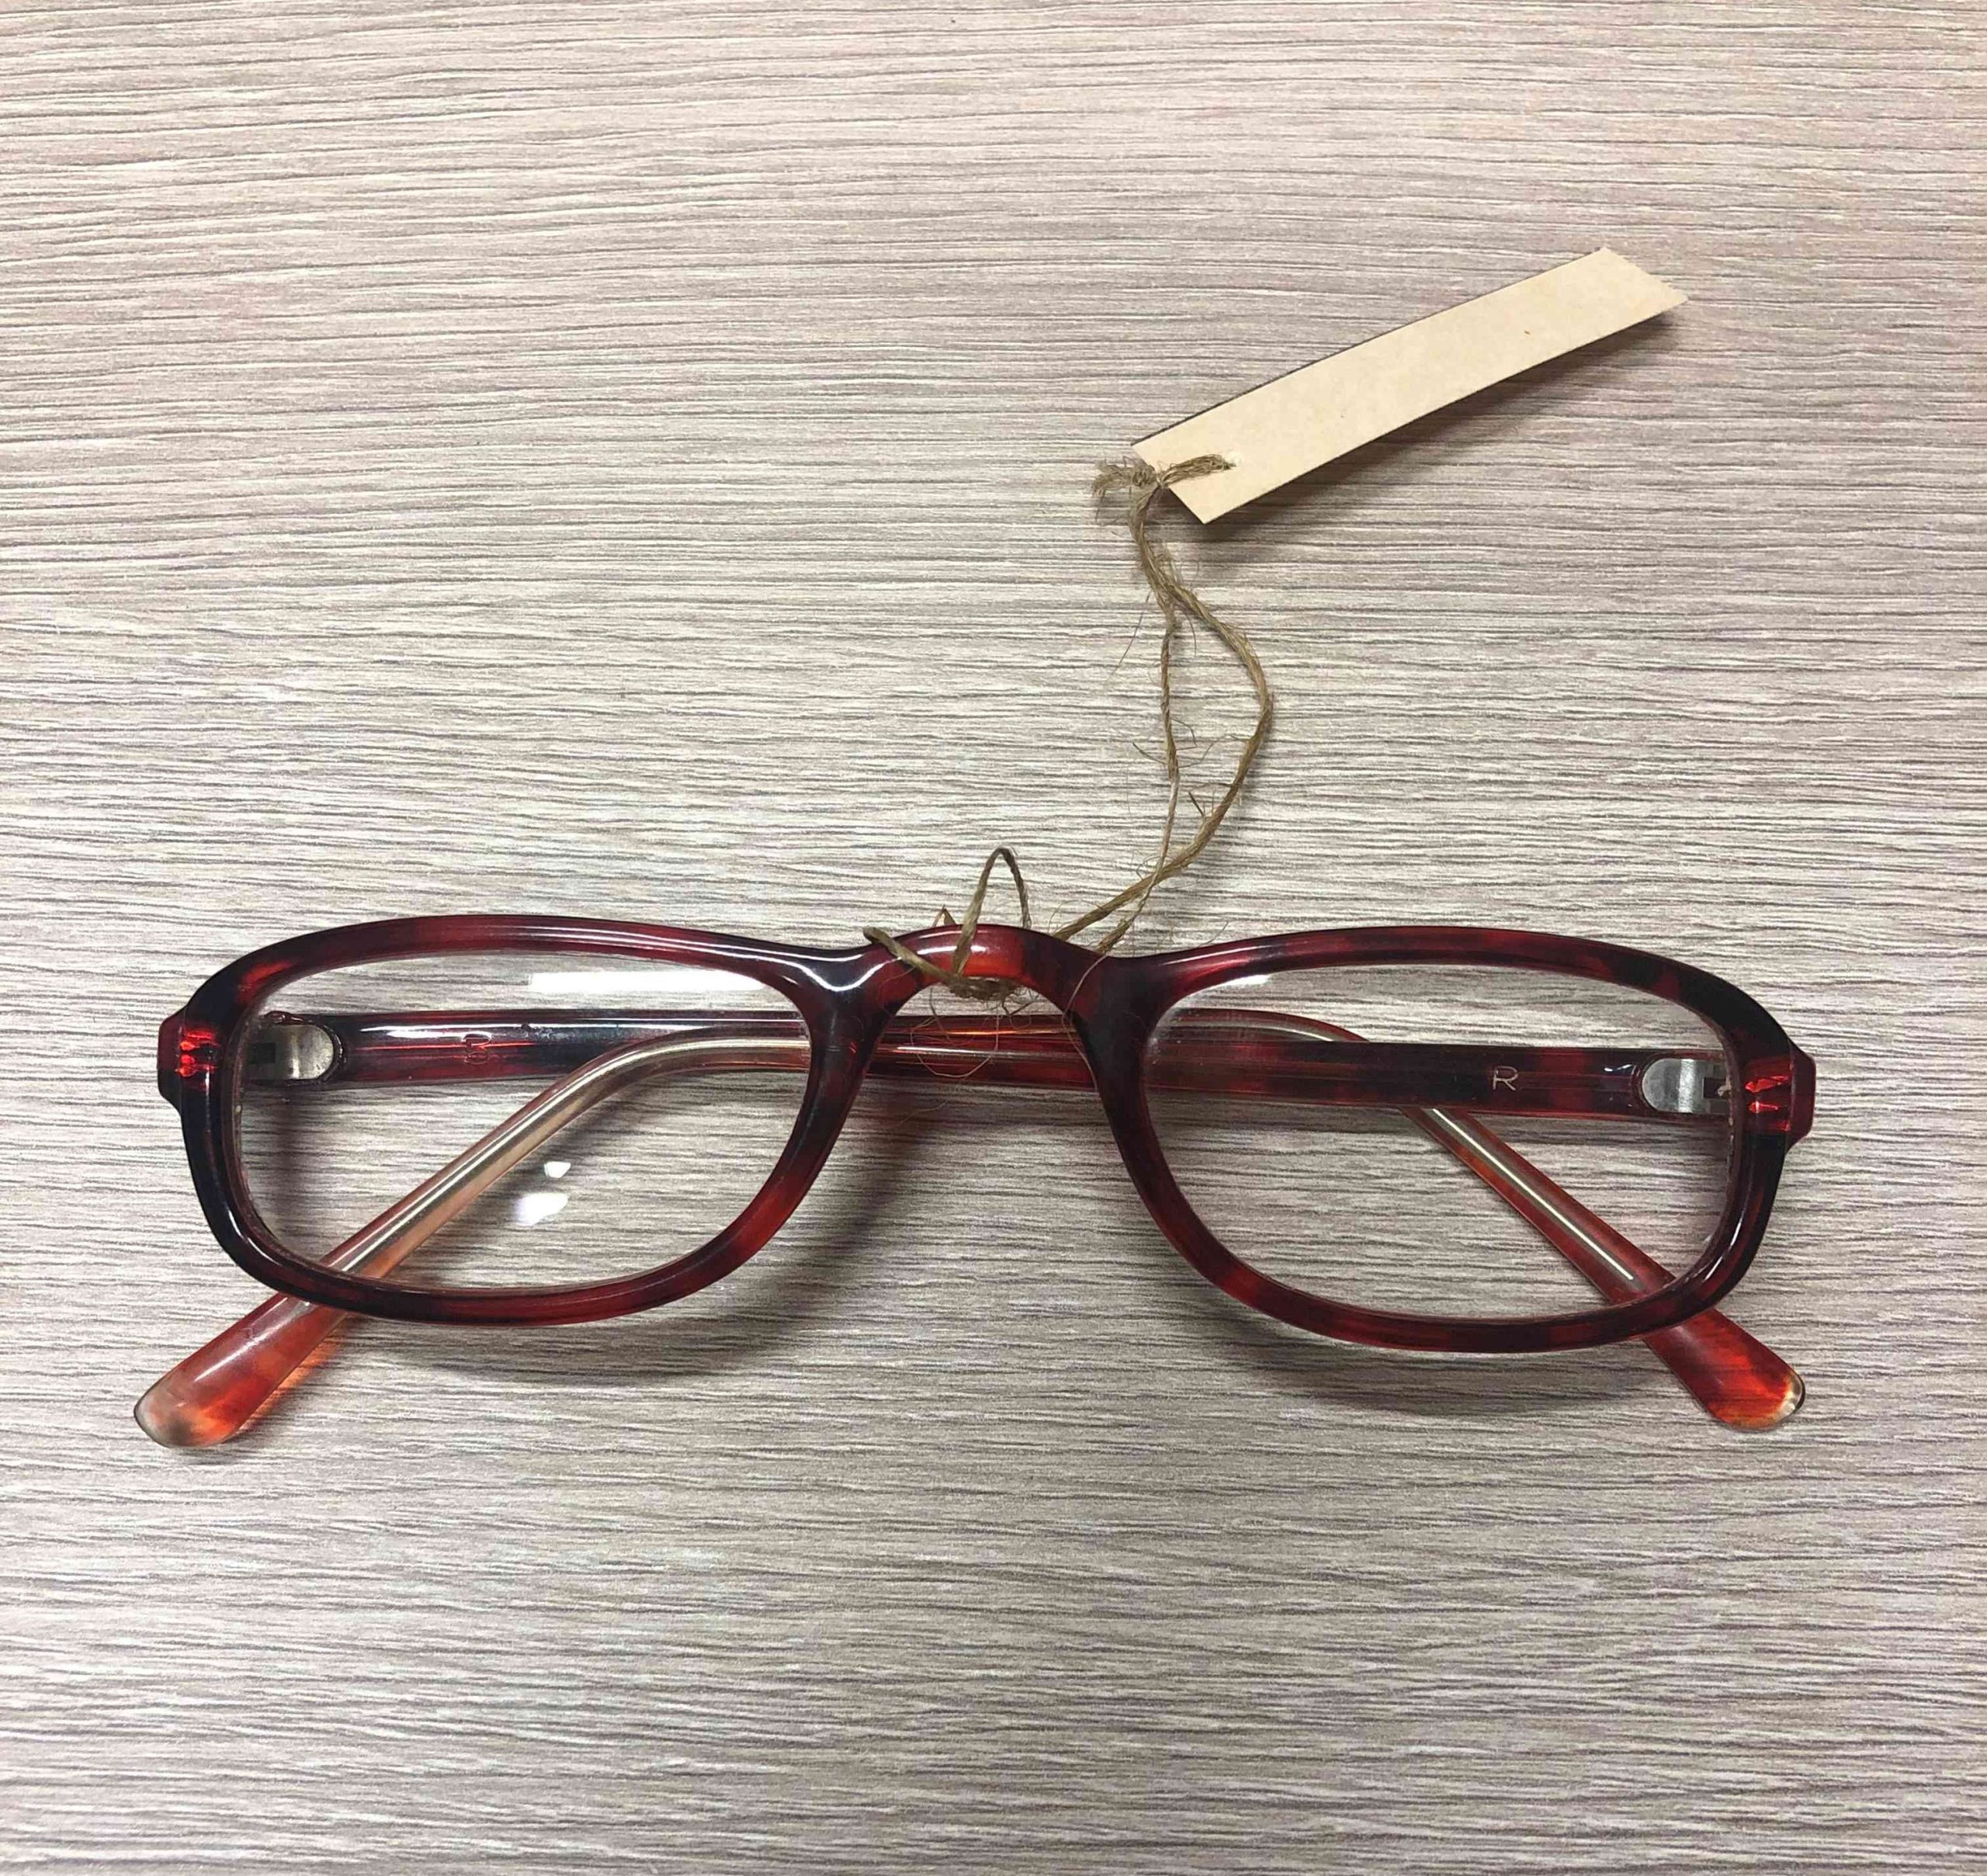 K. Ostrausko akiniai.